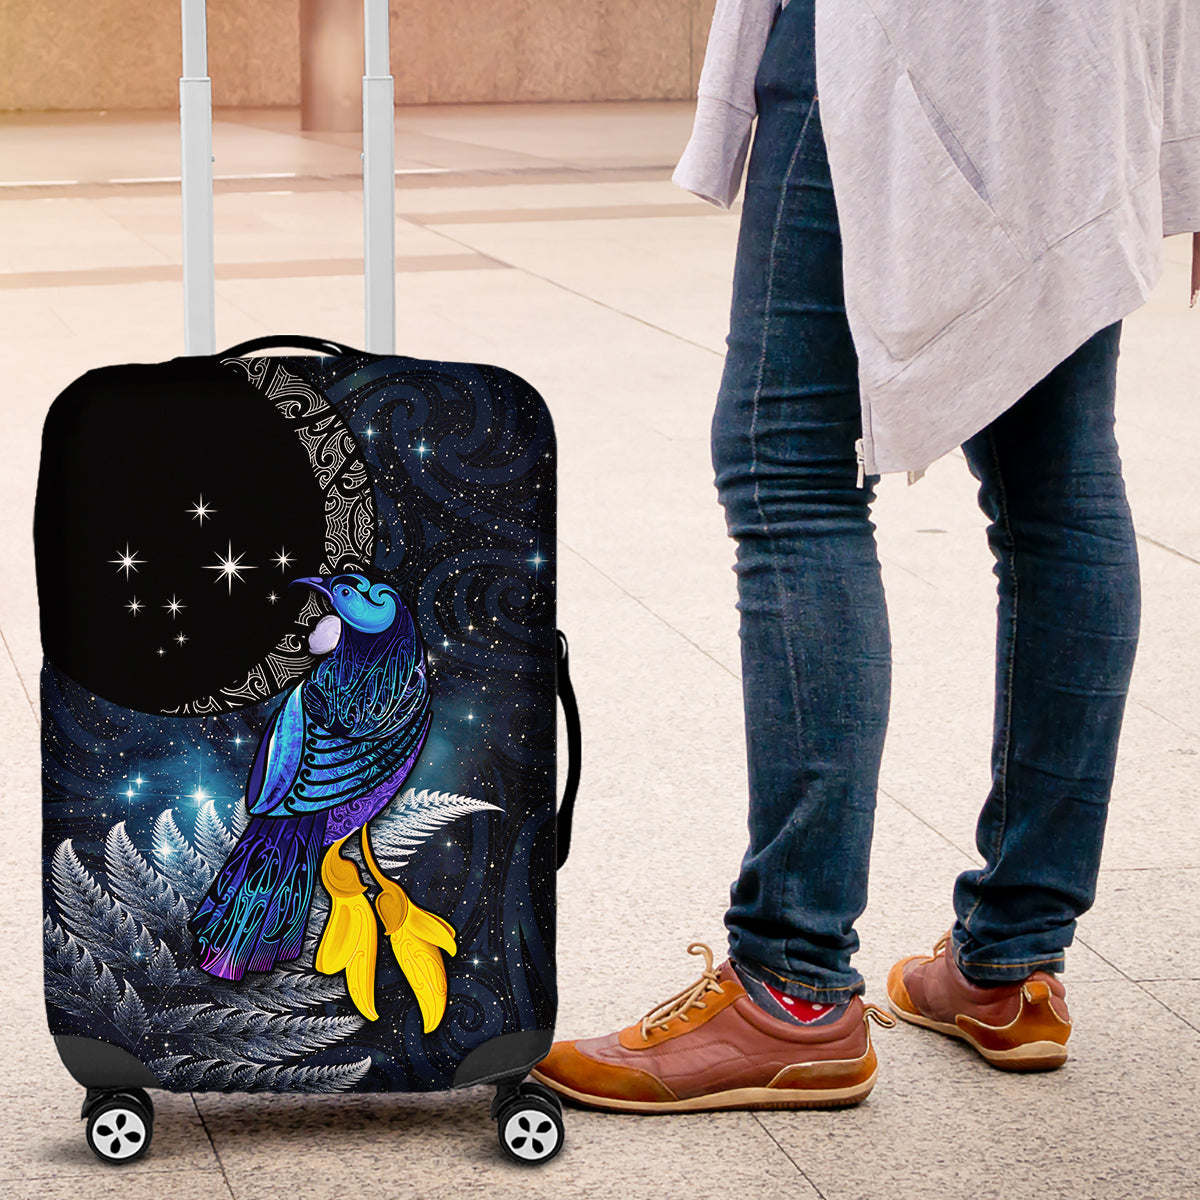 New Zealand Tui Bird Matariki Luggage Cover Galaxy Fern With Maori Pattern